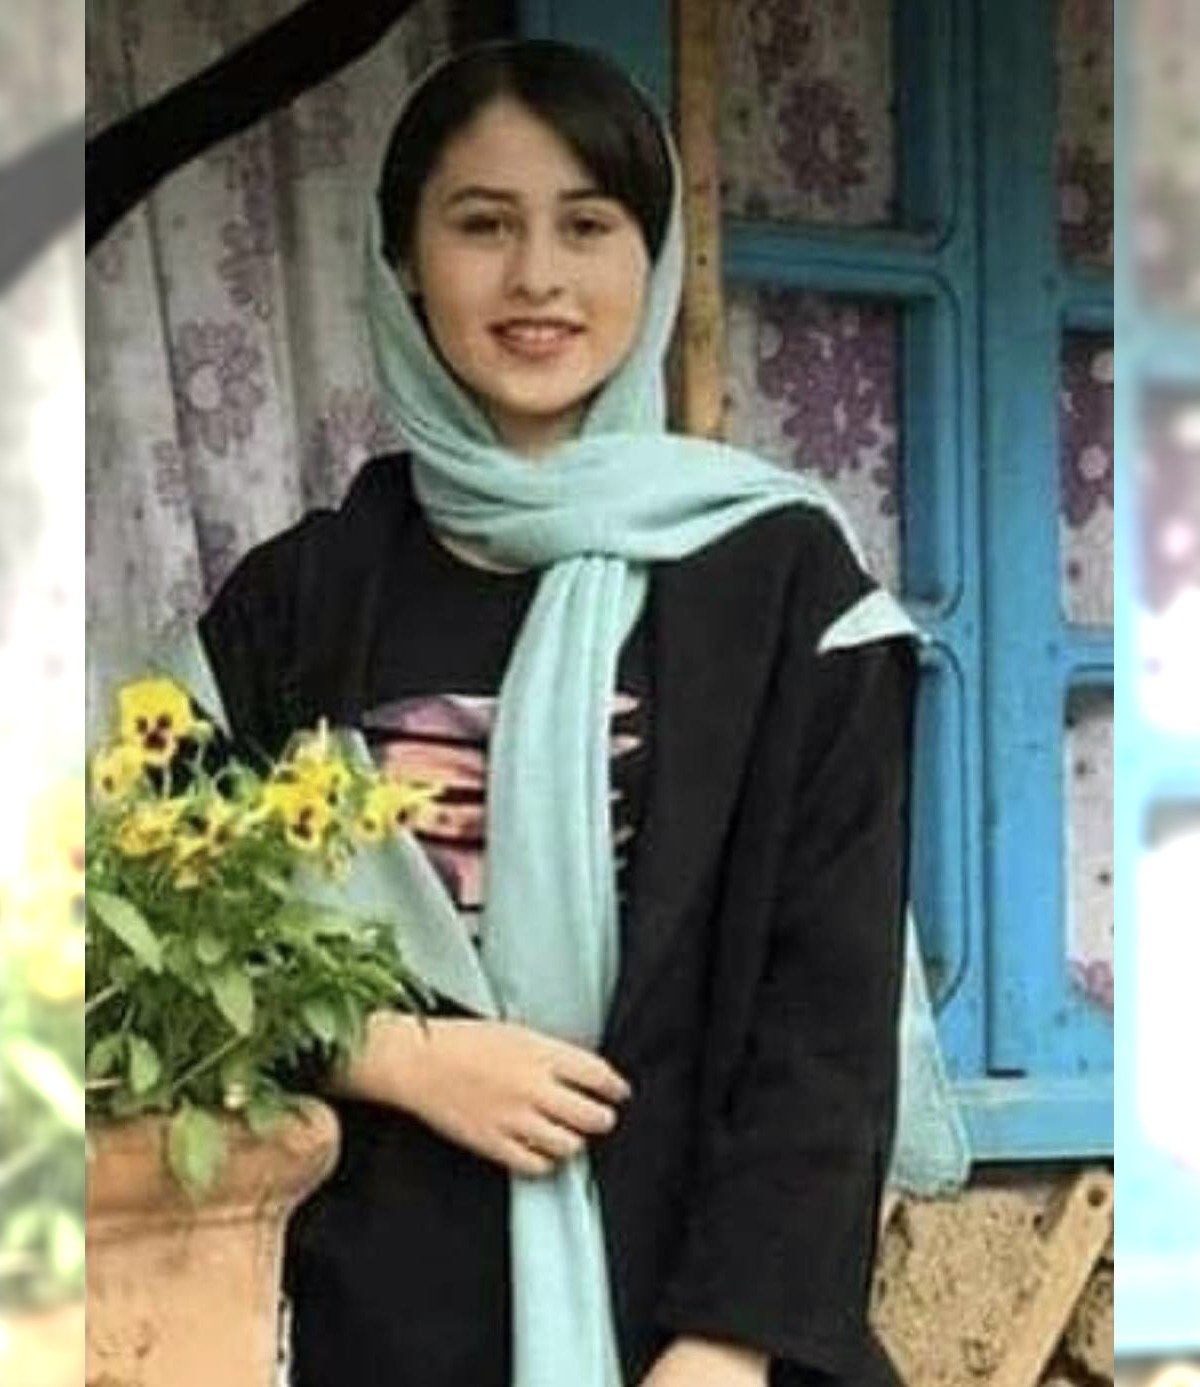 Ojciec ścina 14-letnią dziewczynę sierpem za ucieczkę. Iran ma problemy z "zabójstwami honorowymi"